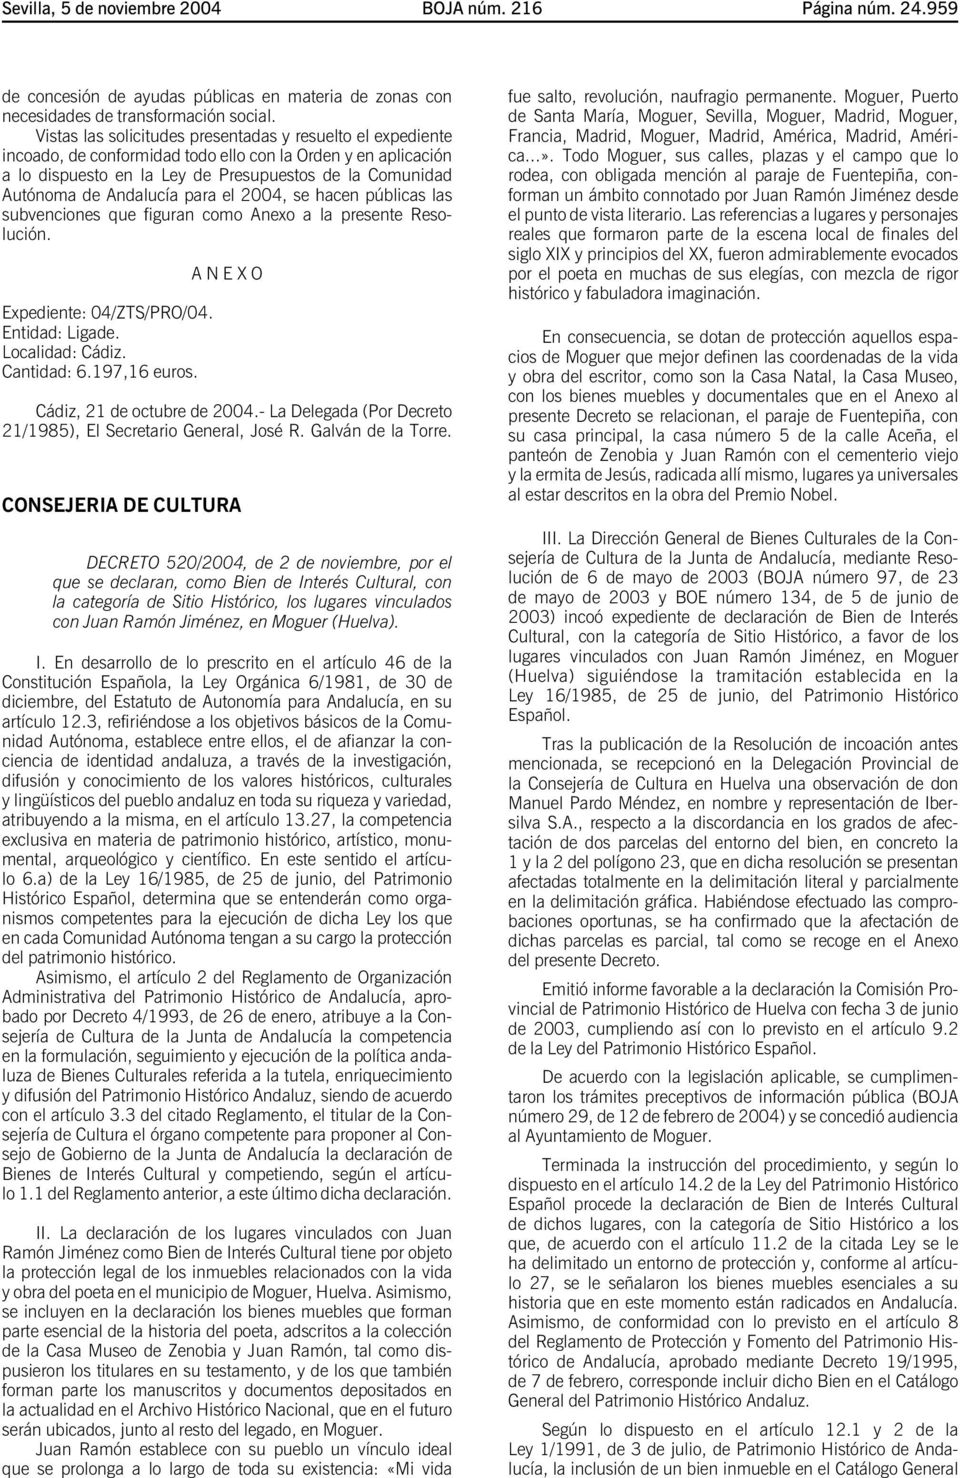 Andalucía para el 2004, se hacen públicas las subvenciones que figuran como Anexo a la presente Resolución. Expediente: 04/ZTS/PRO/04. Entidad: Ligade. Localidad: Cádiz. Cantidad: 6.197,16 euros.